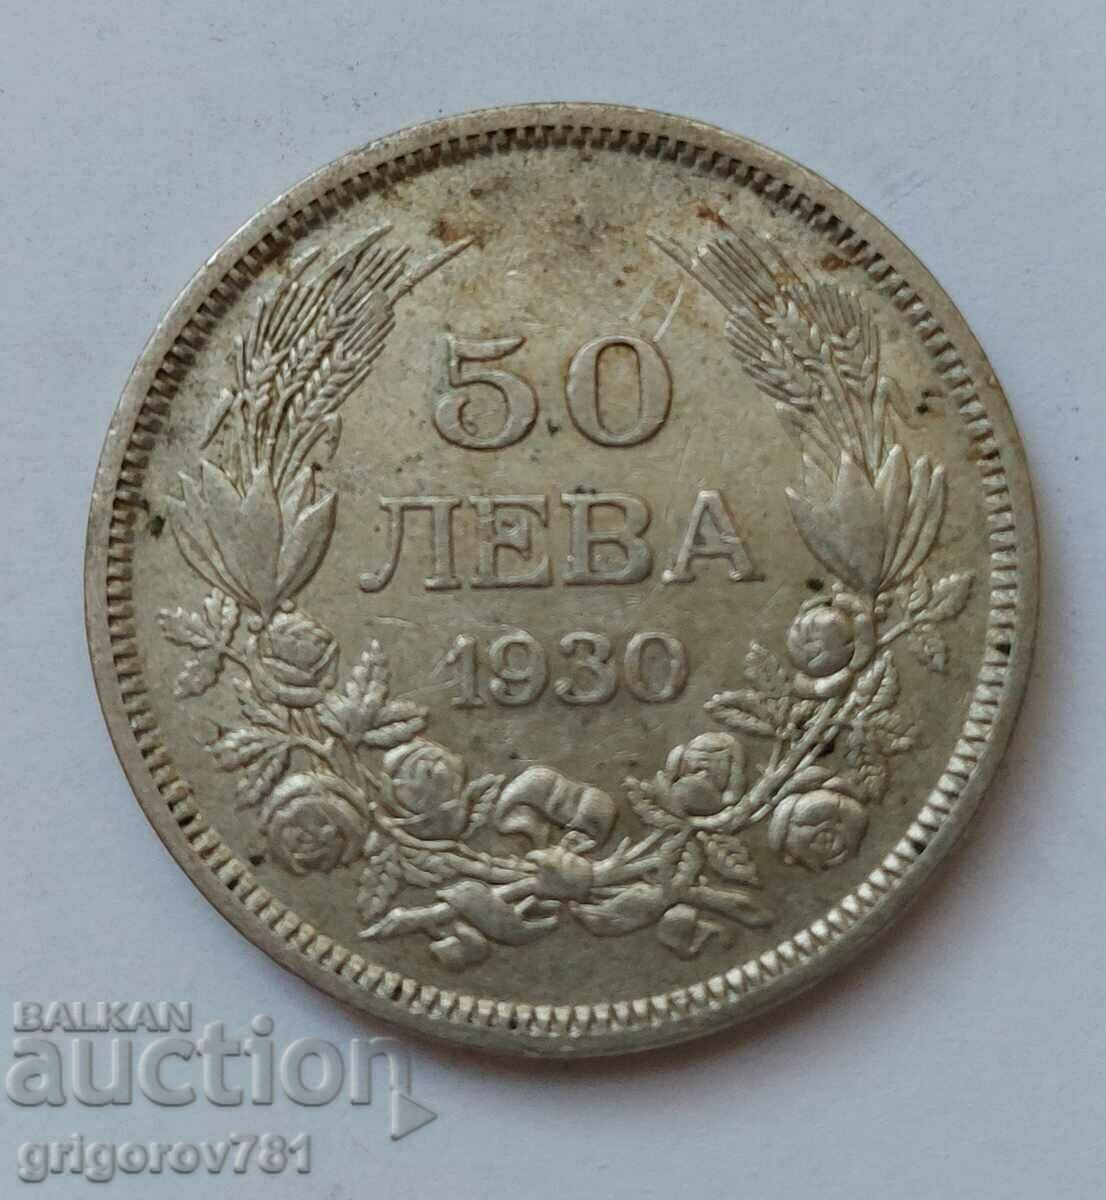 Ασήμι 50 λέβα Βουλγαρία 1930 - ασημένιο νόμισμα #90